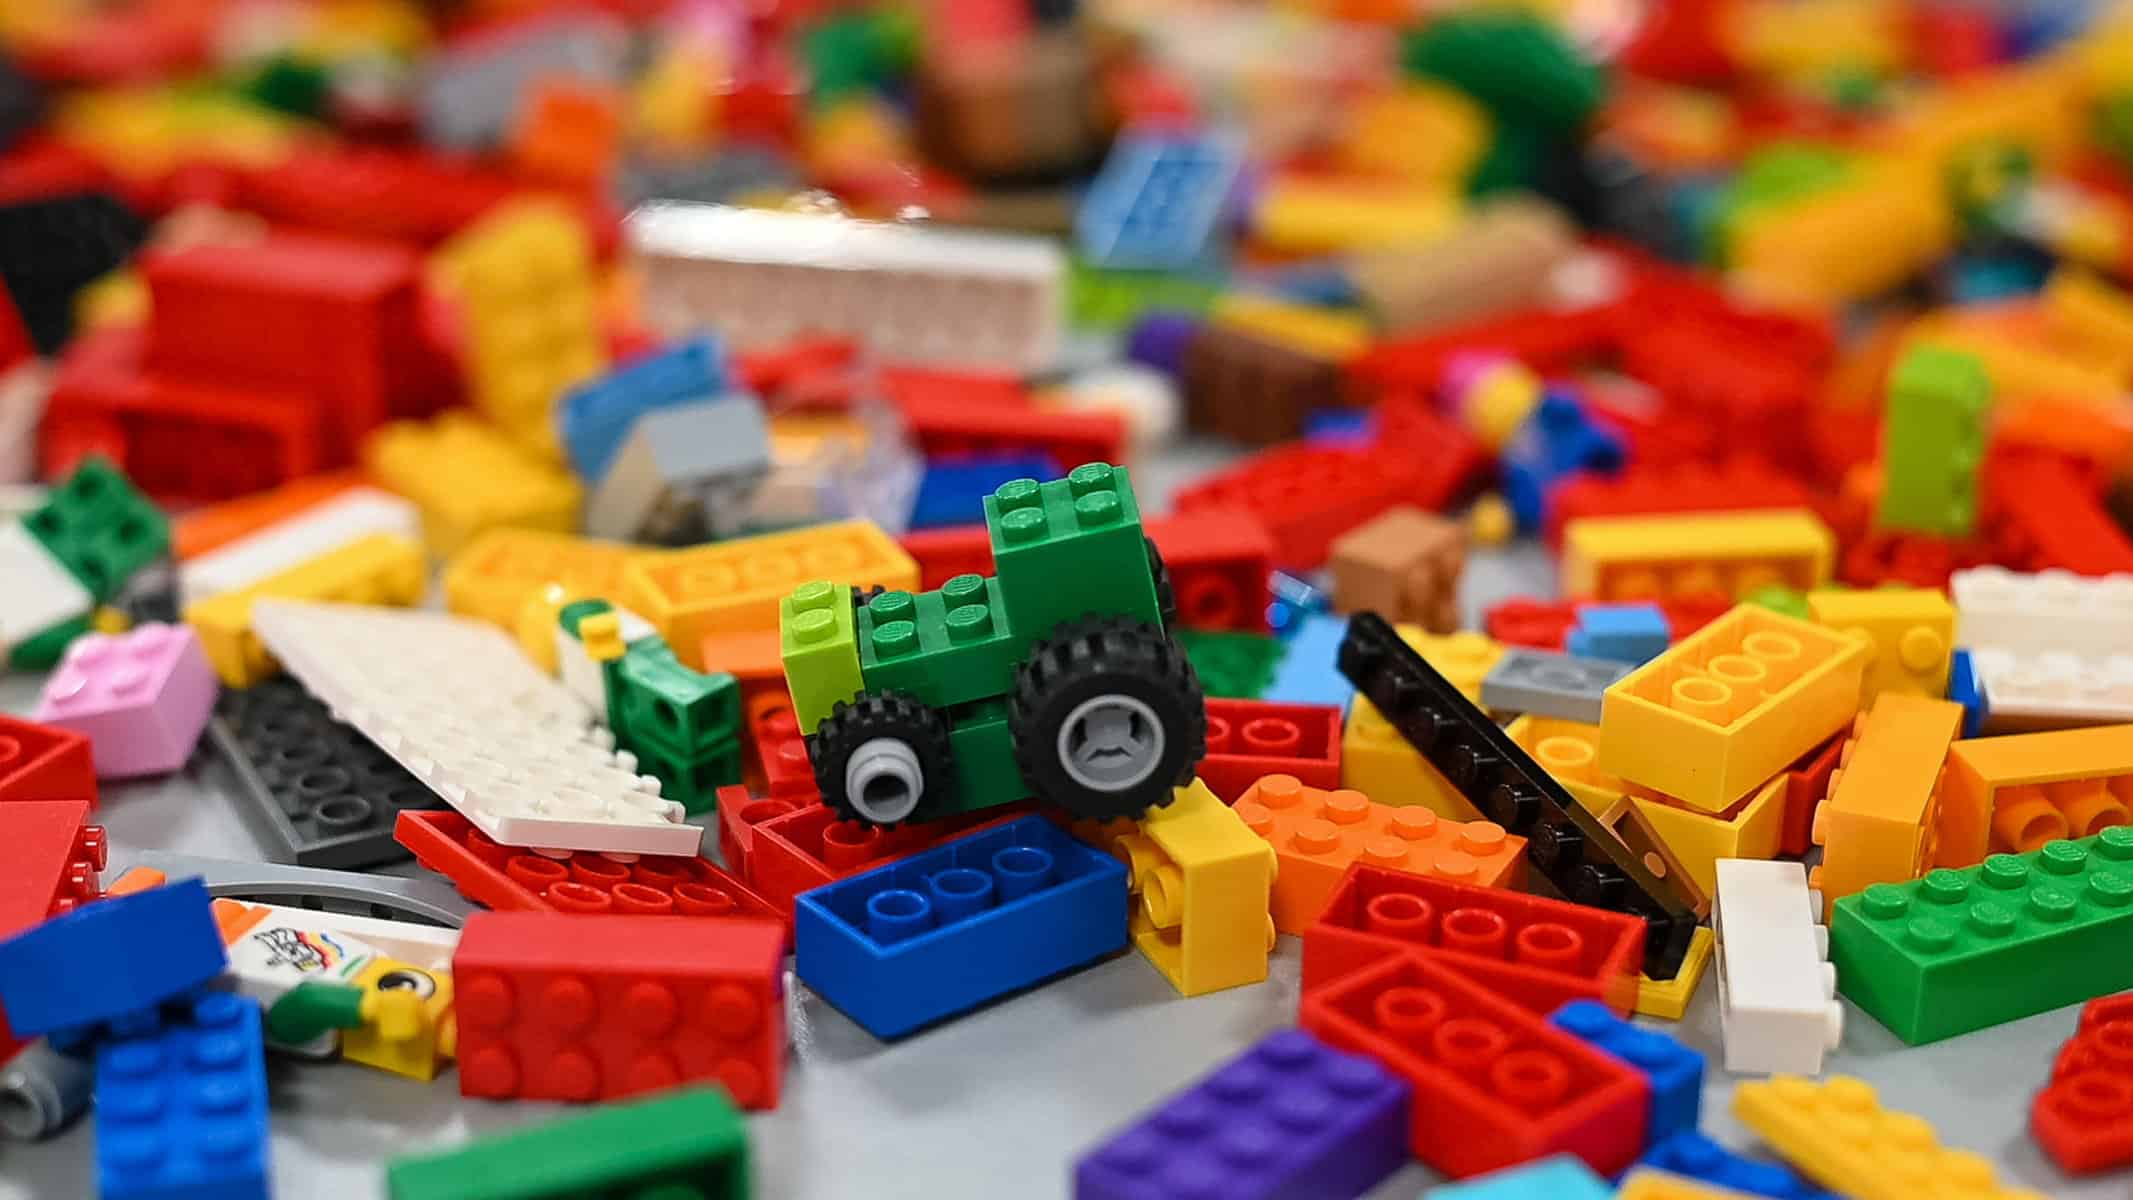 Uma pilha colorida de peças de lego sobre uma mesa.